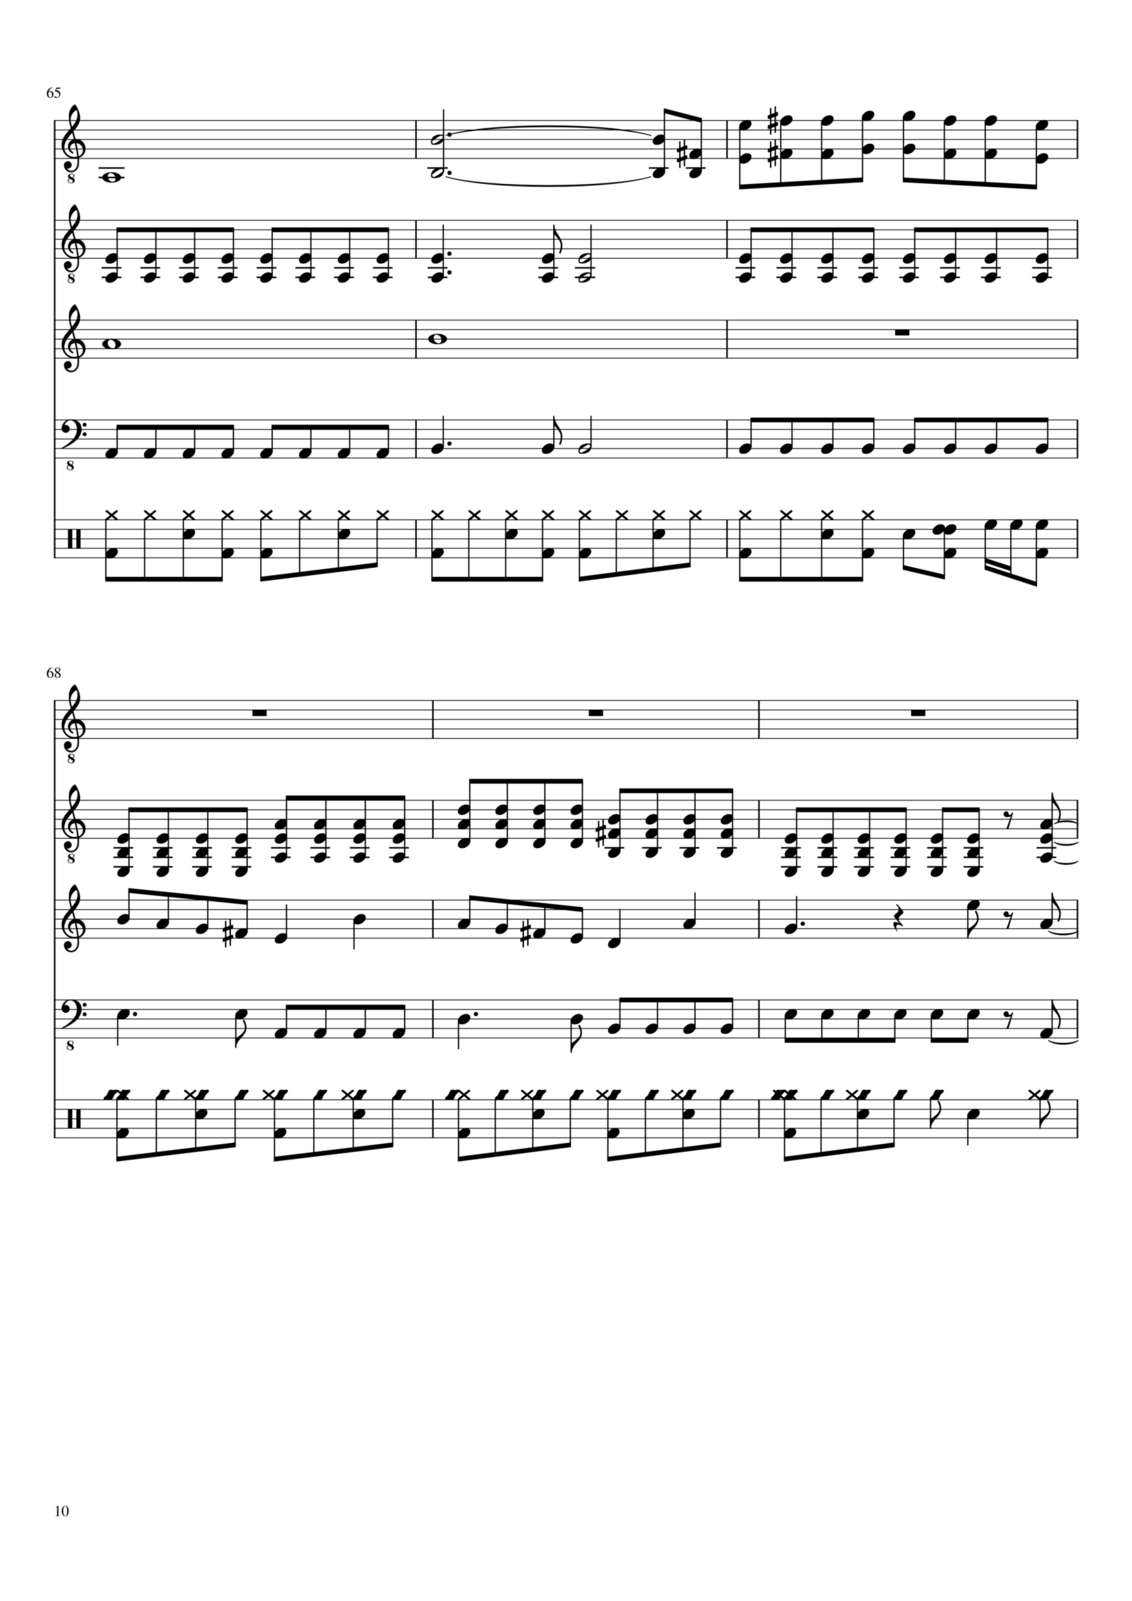 Vospominaniya o byiloy lyubvi slide, Image 10